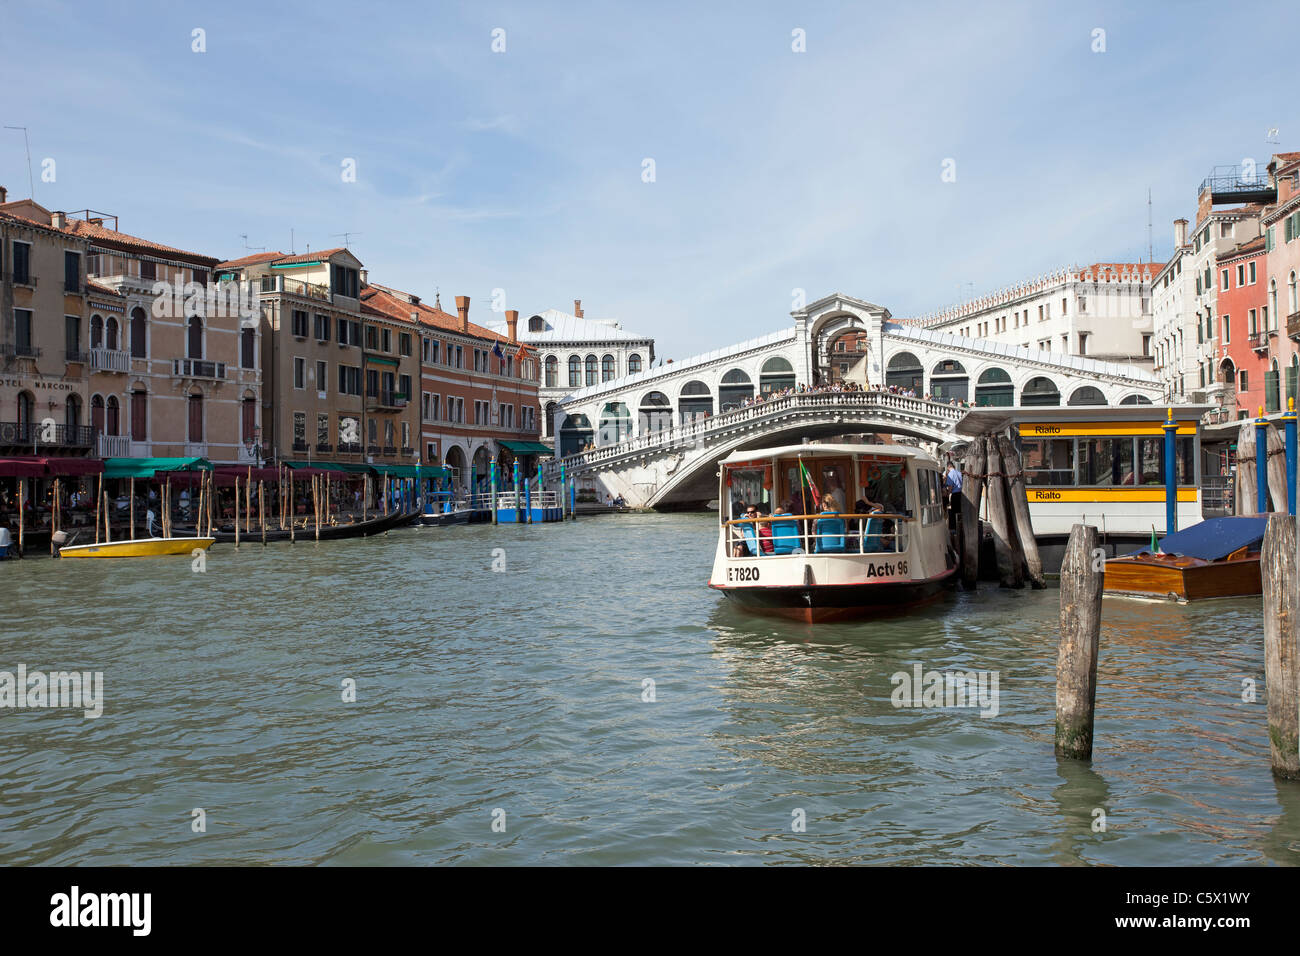 Ponte di Rialto sul Canal Grande di Venezia, Italia. Mostra gli hotels di rivestimento del canale e vaporetti che operano sul canale. Foto Stock